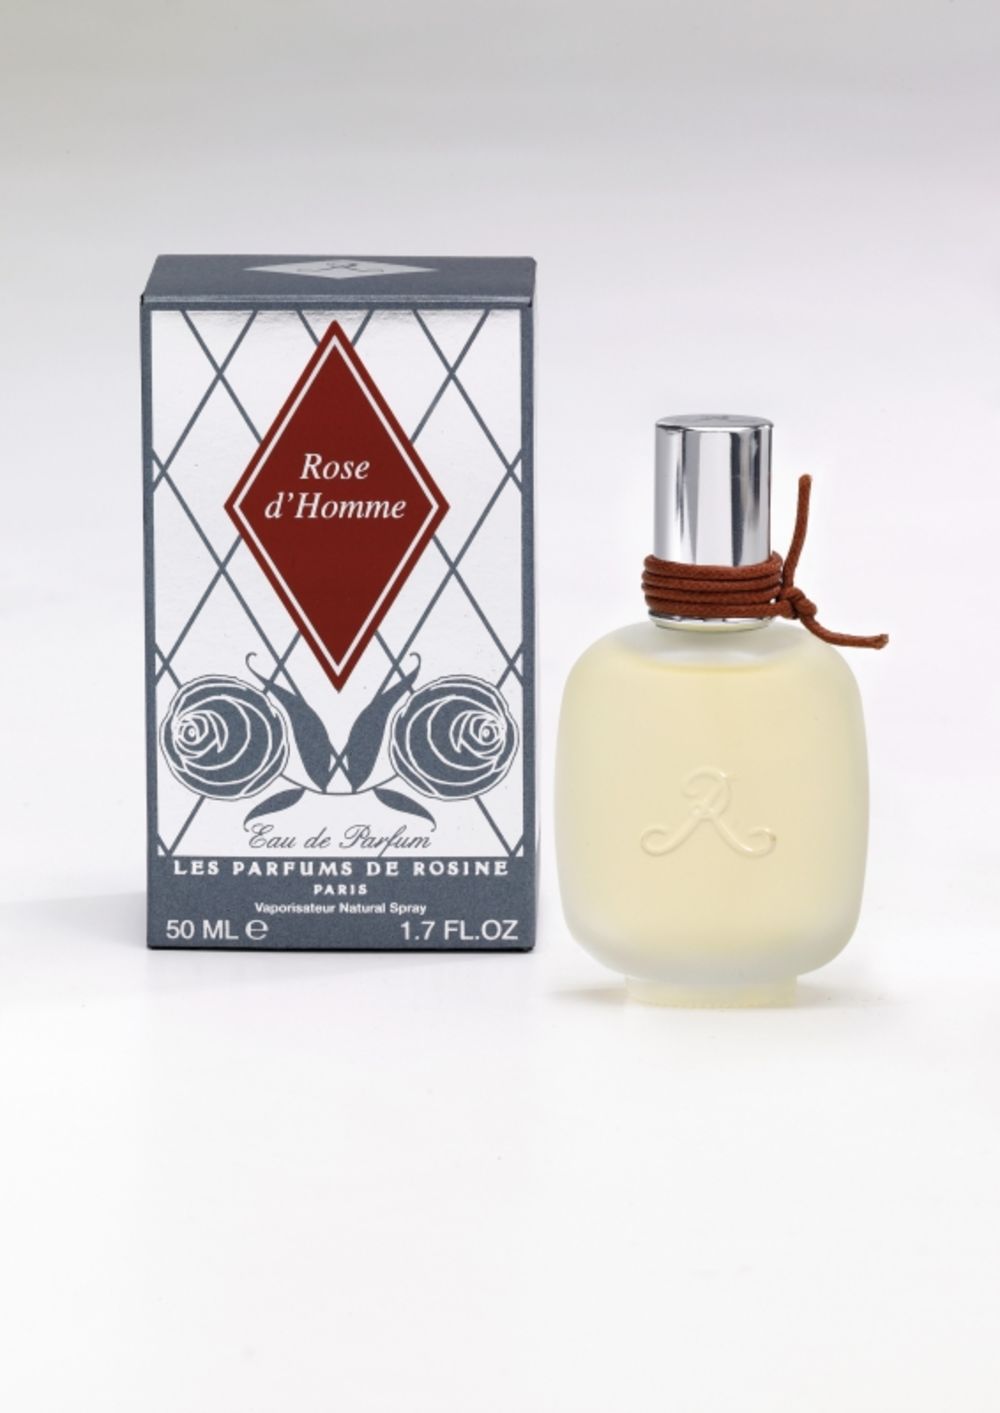 Predstavljamo vam nekoliko novih niche parfema, koji se kod nas mogu naći samo u niche parfimeriji Metropoliten